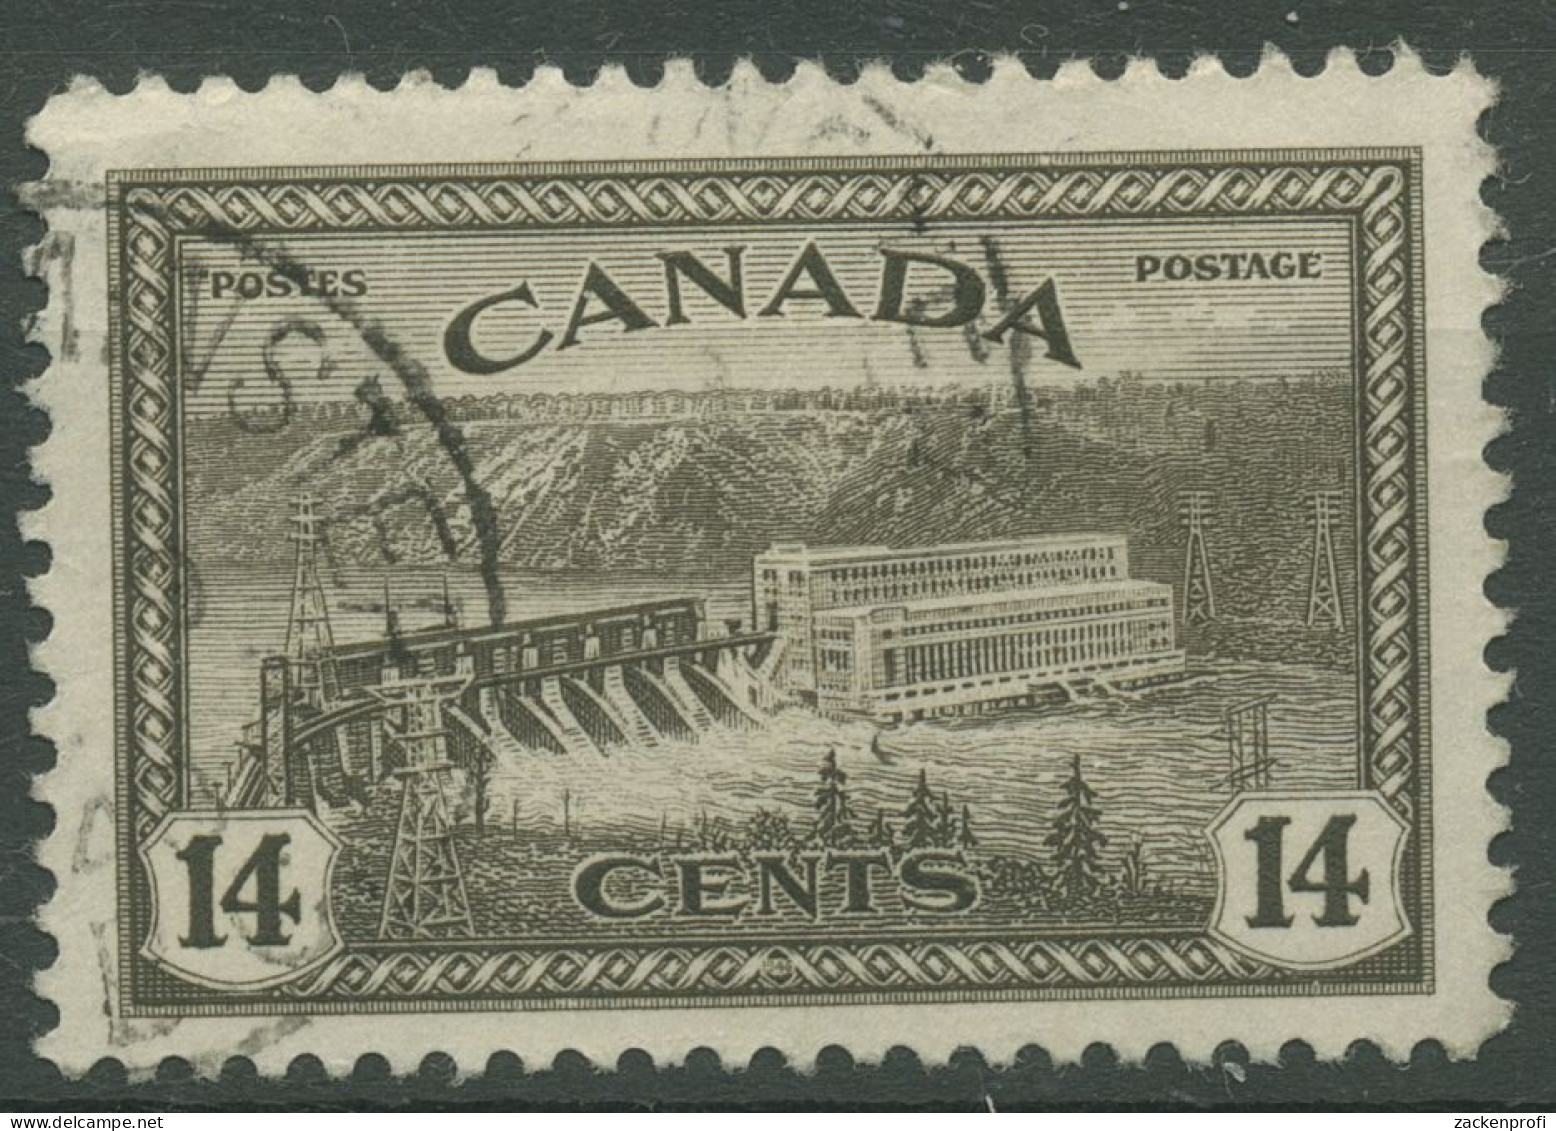 Kanada 1946 Umstellung Auf Friedensproduktion Wasserkraftwerk 237 Gestempelt - Usados